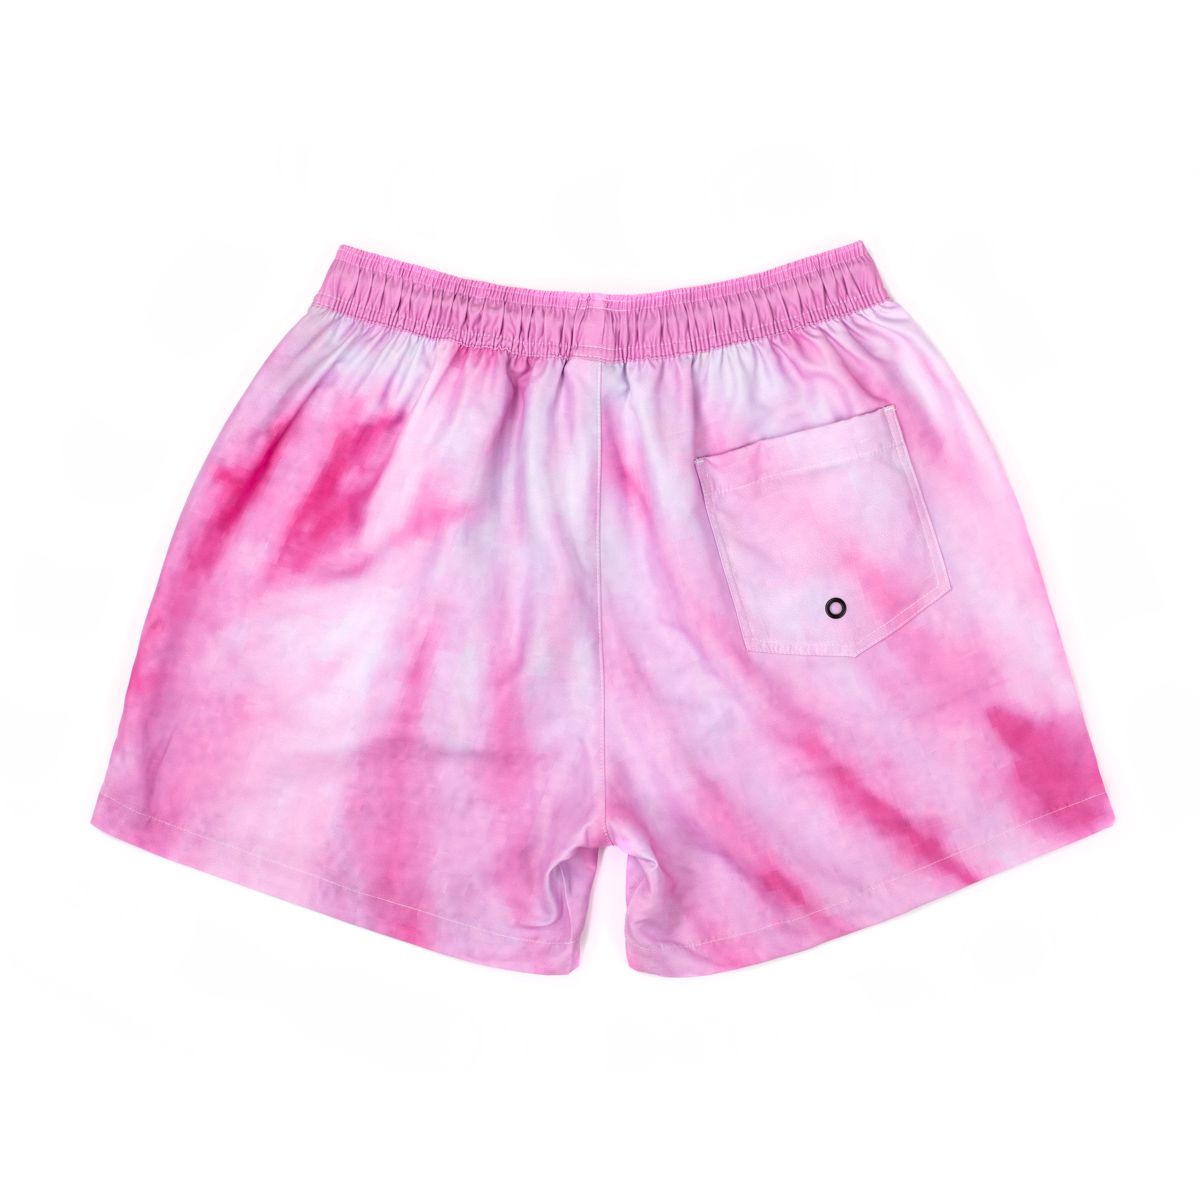 Pink Whitney Pink Tie Dye Swim Trunks-Swimwear-Pink Whitney-Barstool Sports